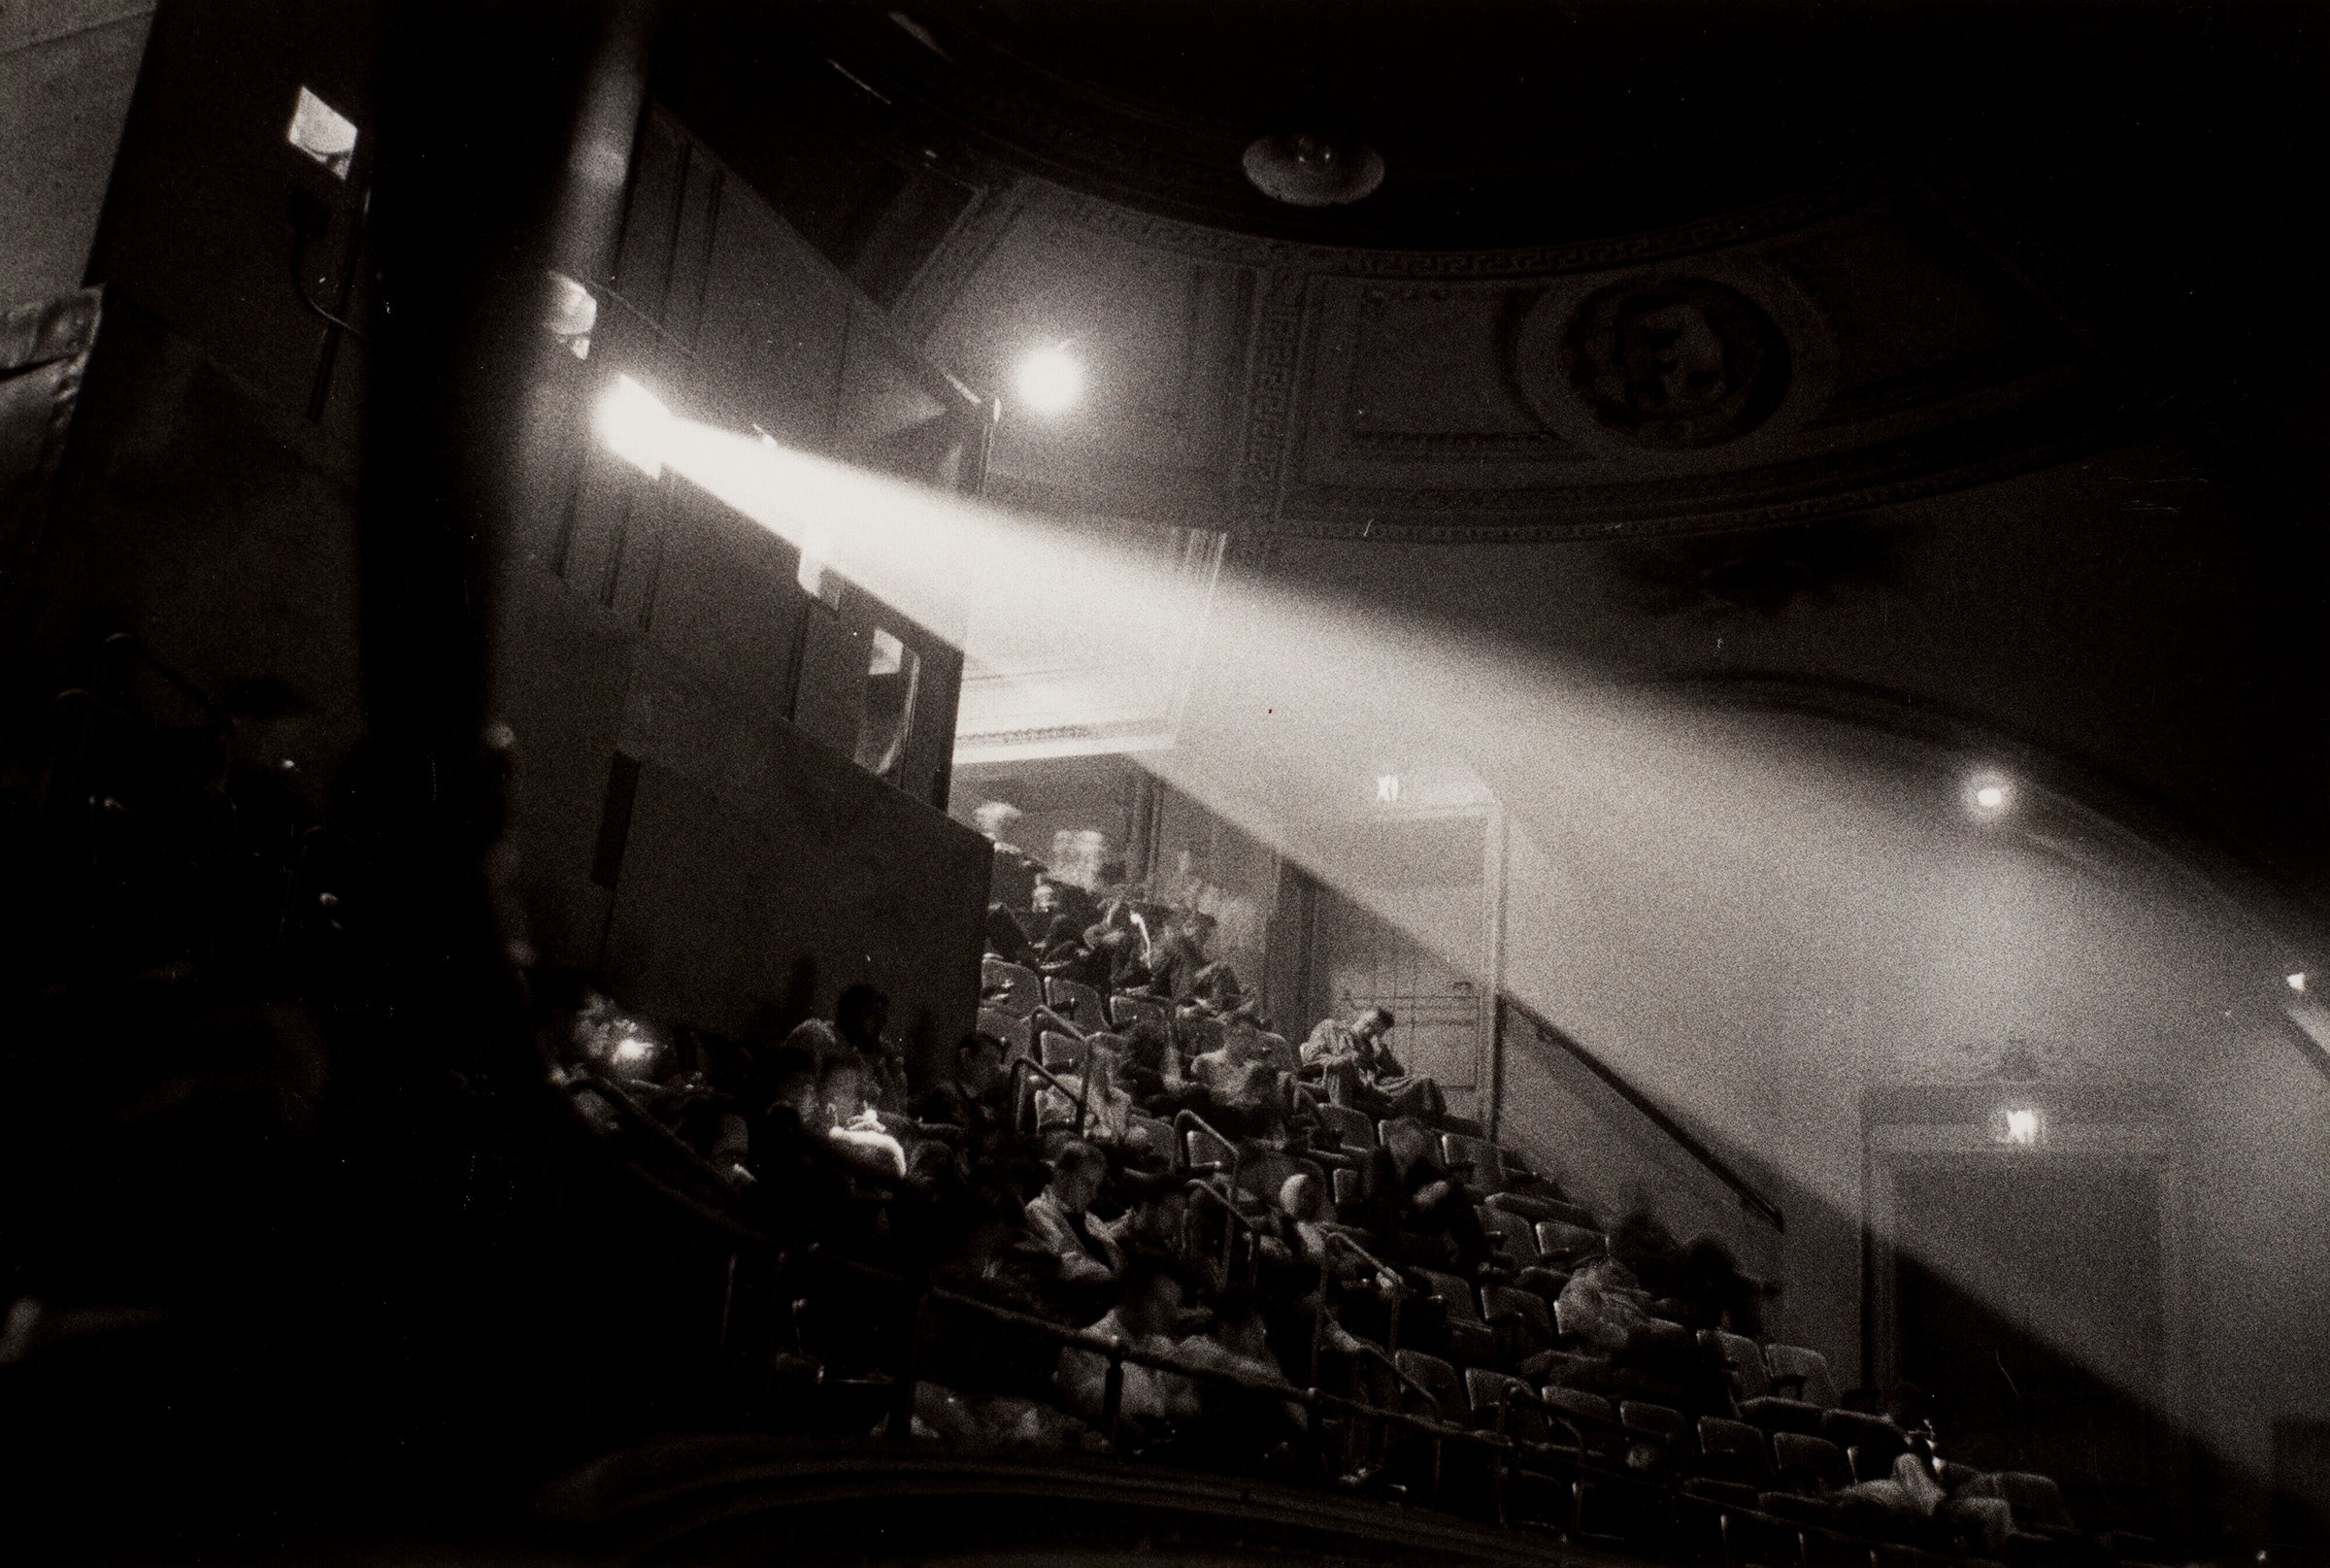 Diane Arbus (1923-1971), 42nd street Movie theater audience, N.Y.C